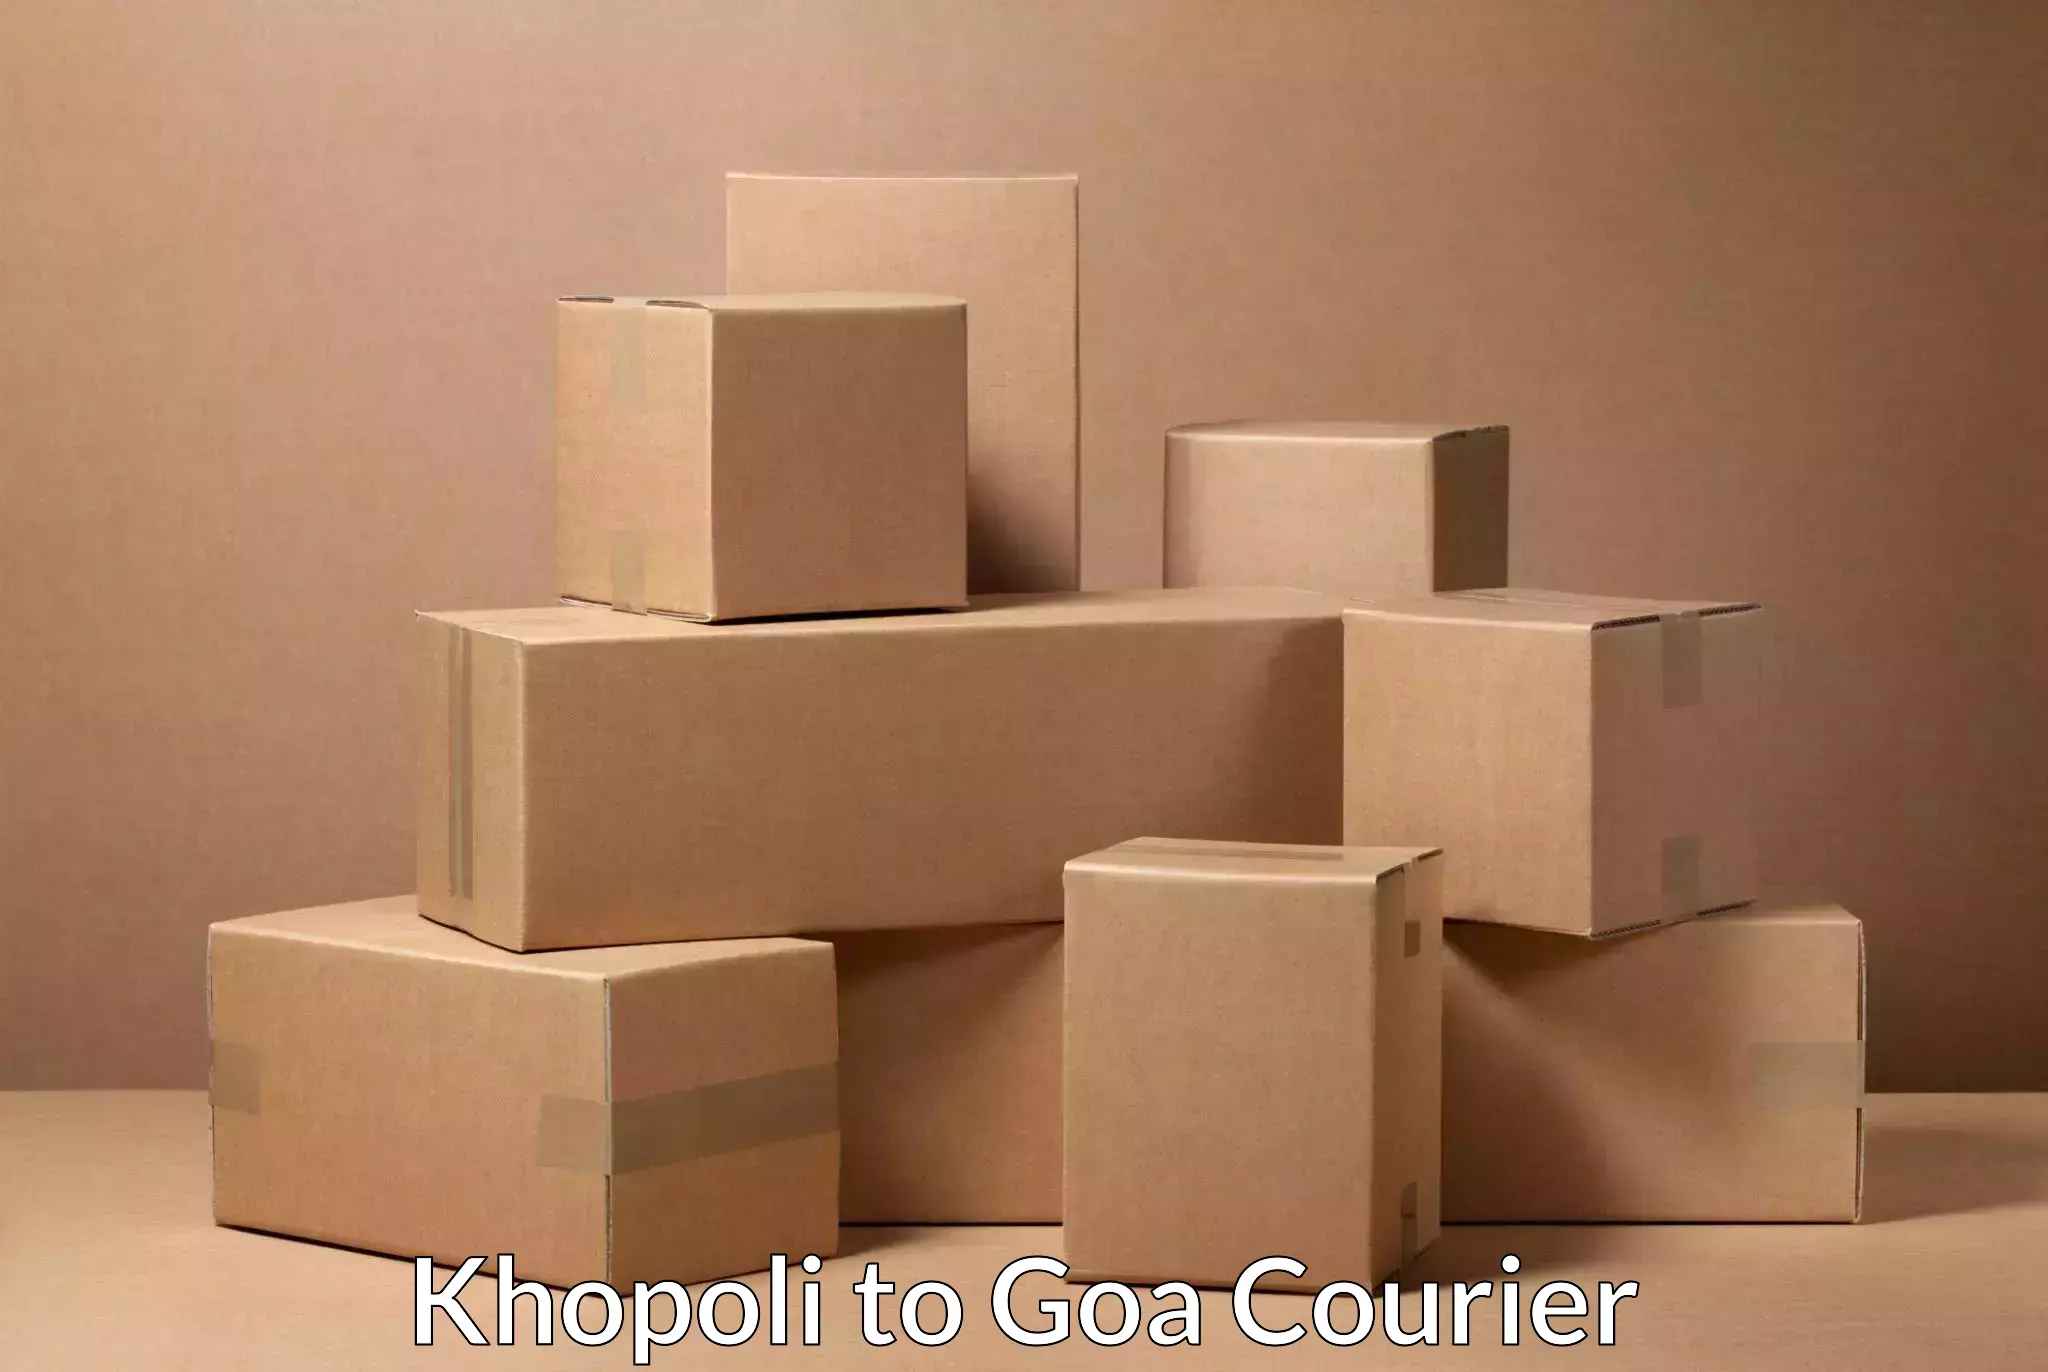 High-priority parcel service Khopoli to Panjim